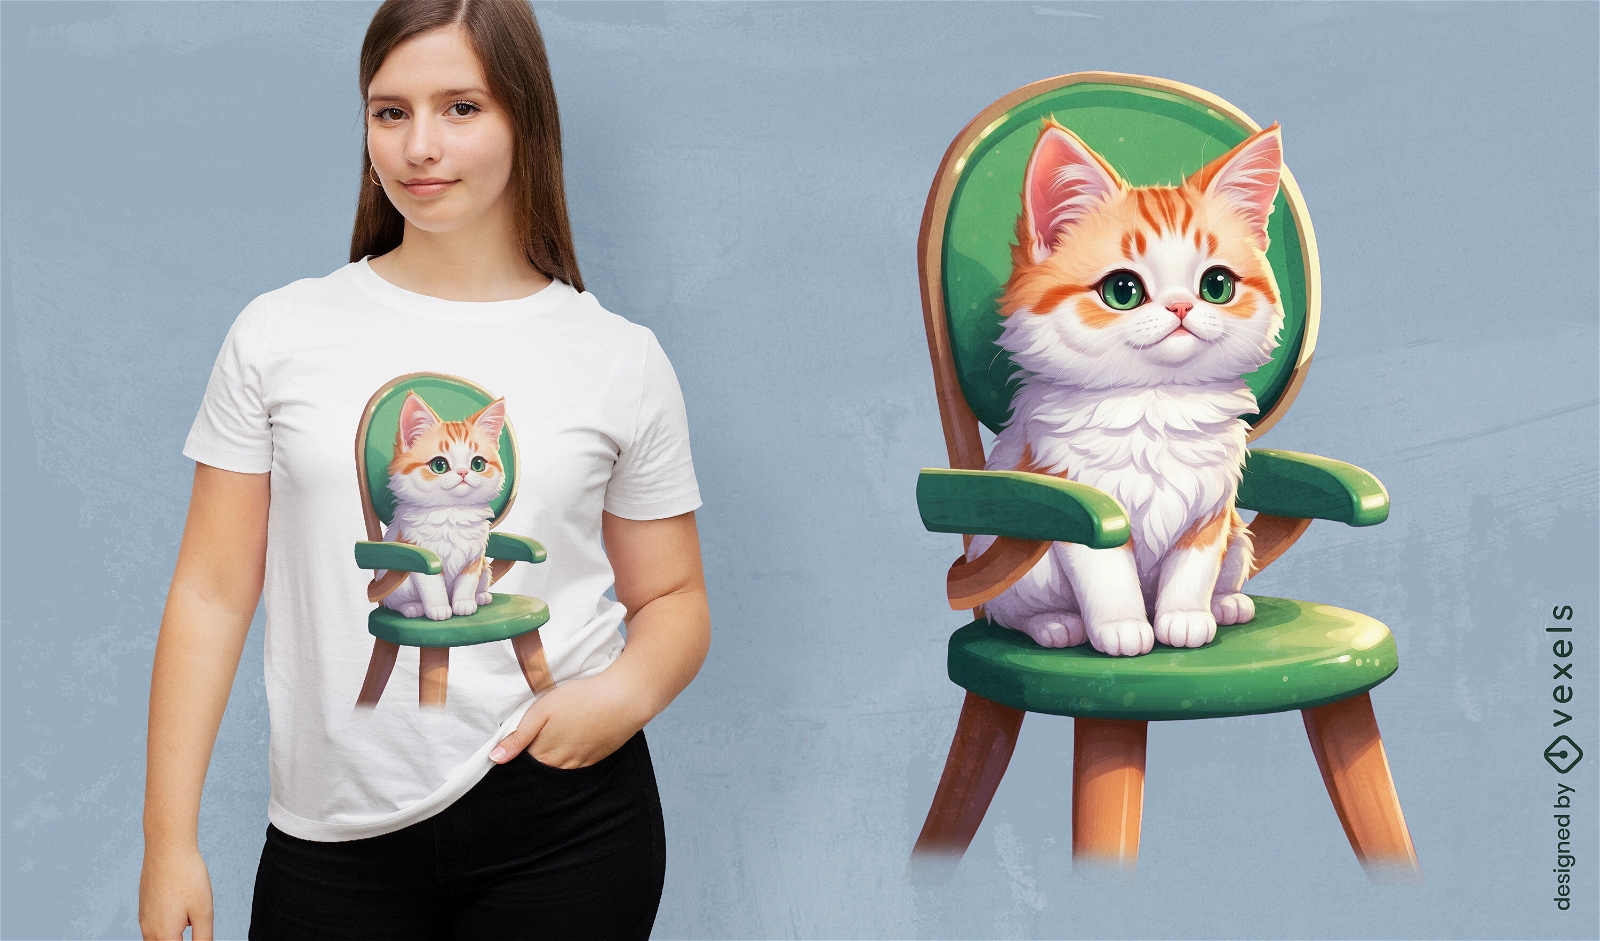 Dise?o de camiseta con ilustraci?n de gatito en silla.